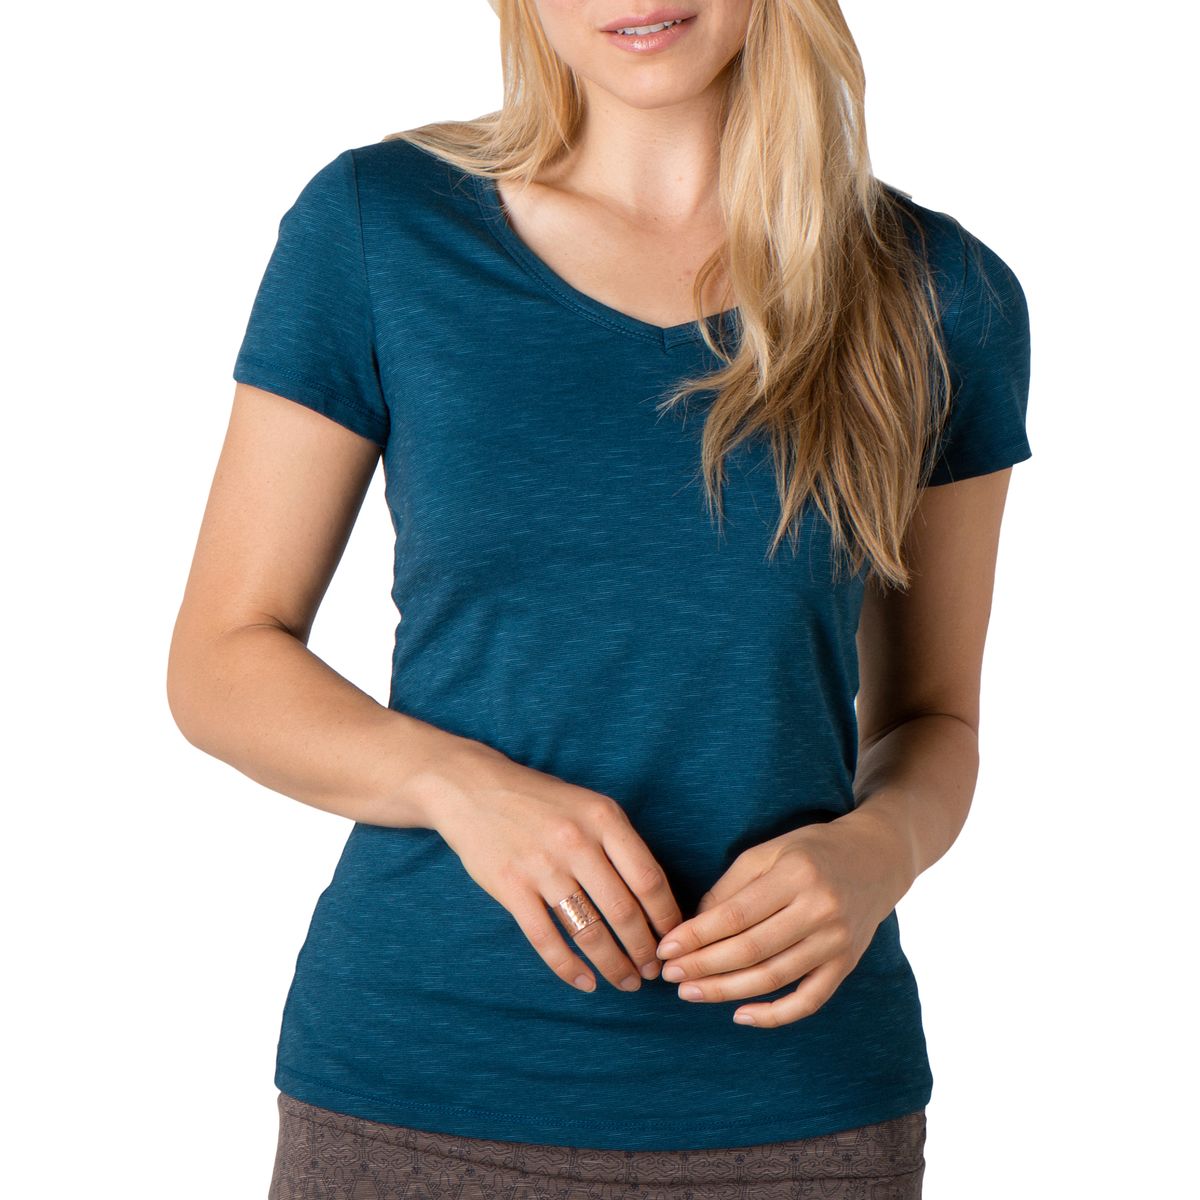 Marley Short-Sleeve T-Shirt - Women